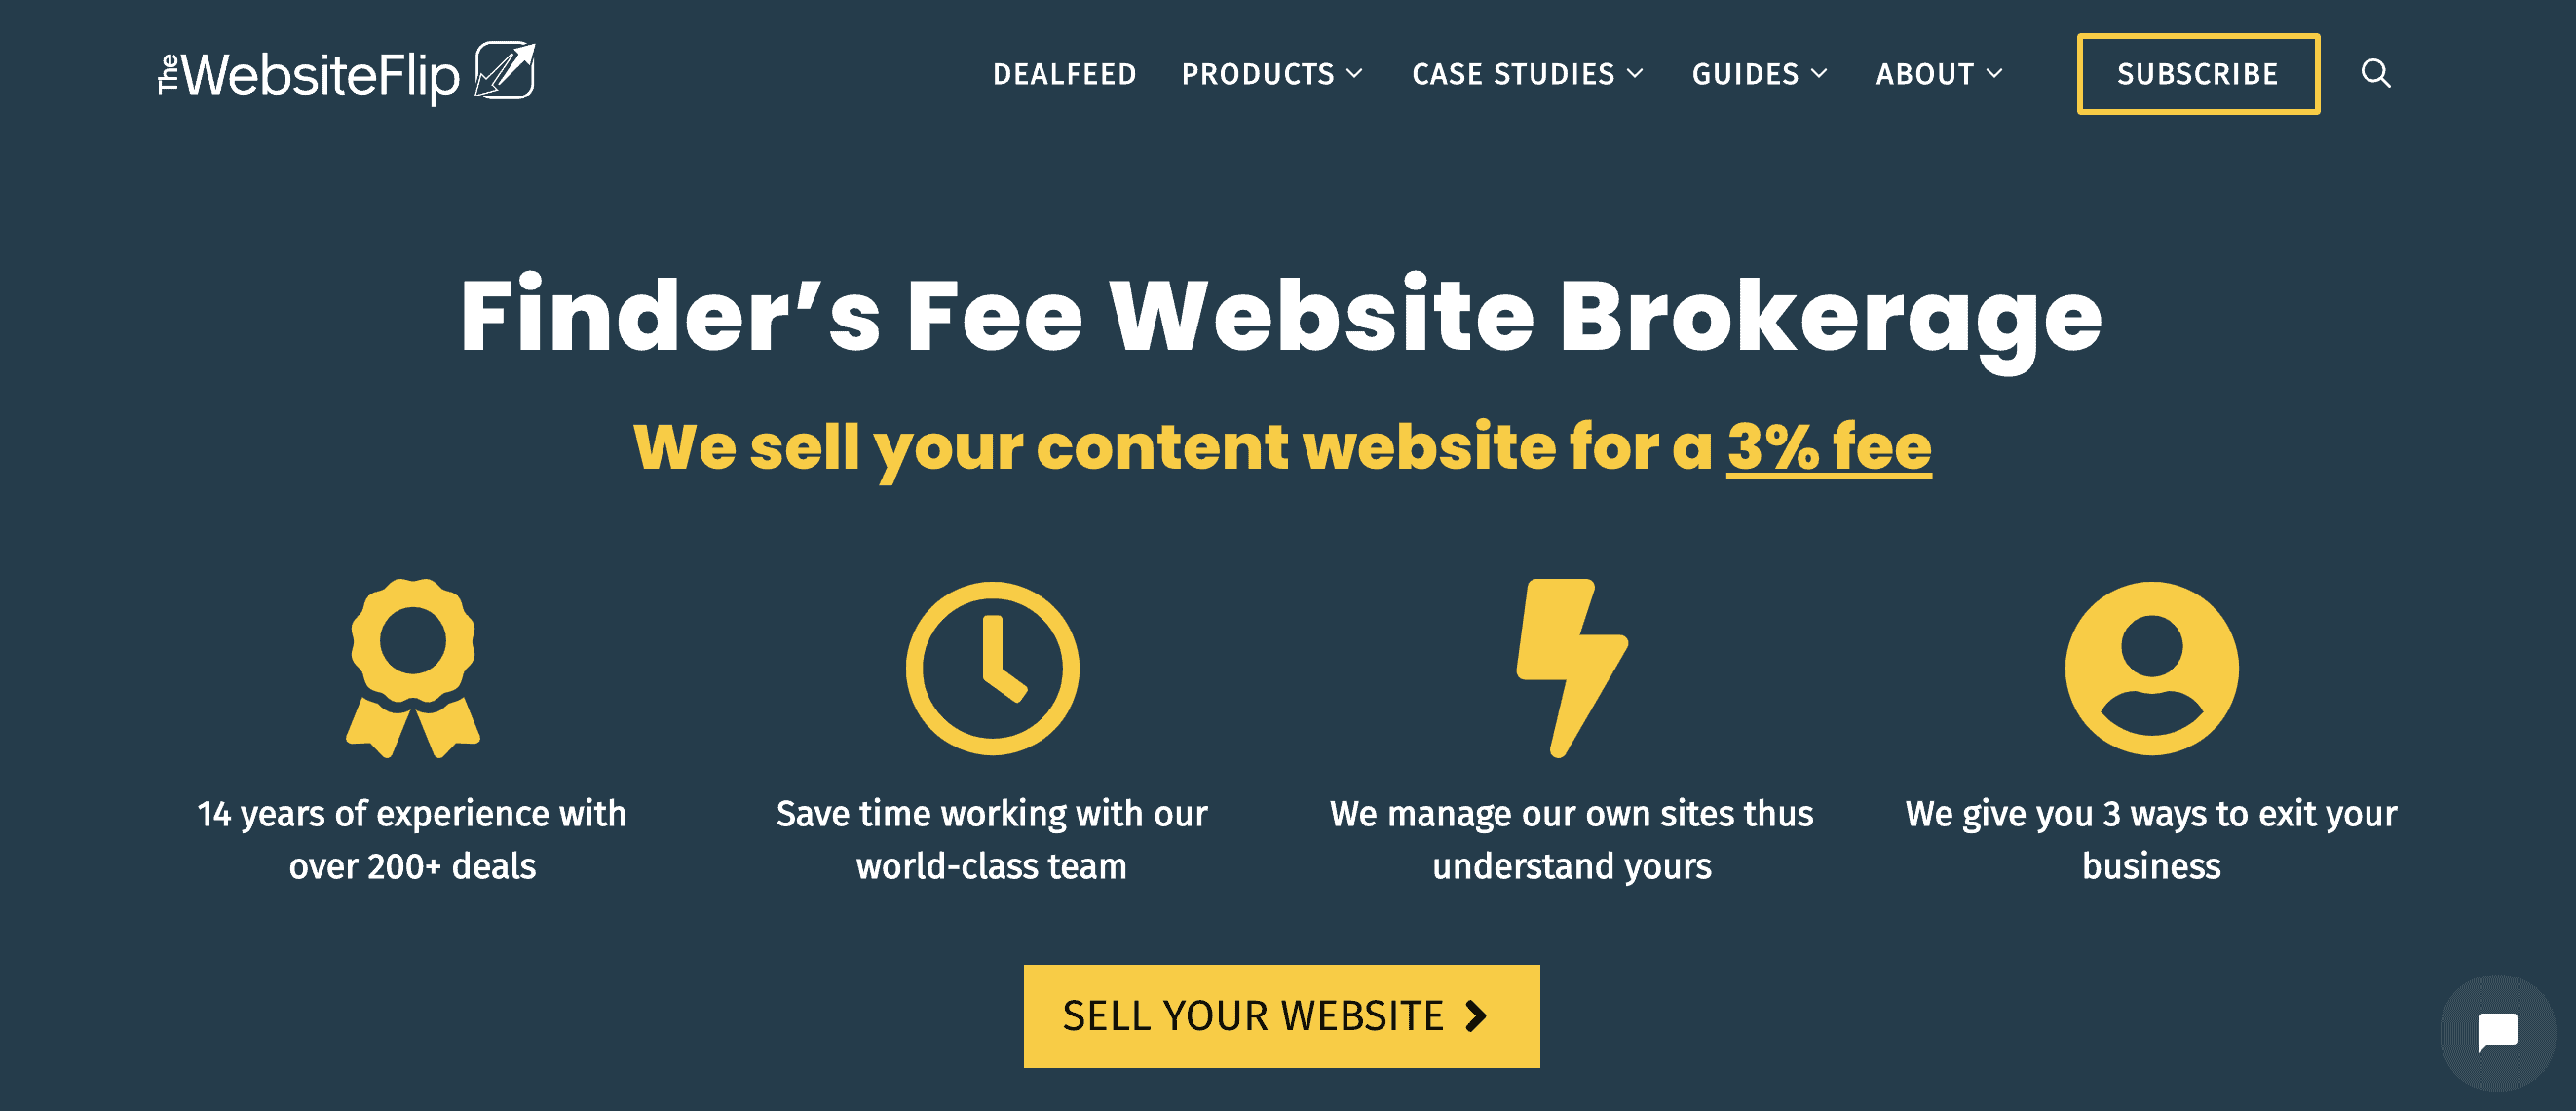 the website flip brokerage